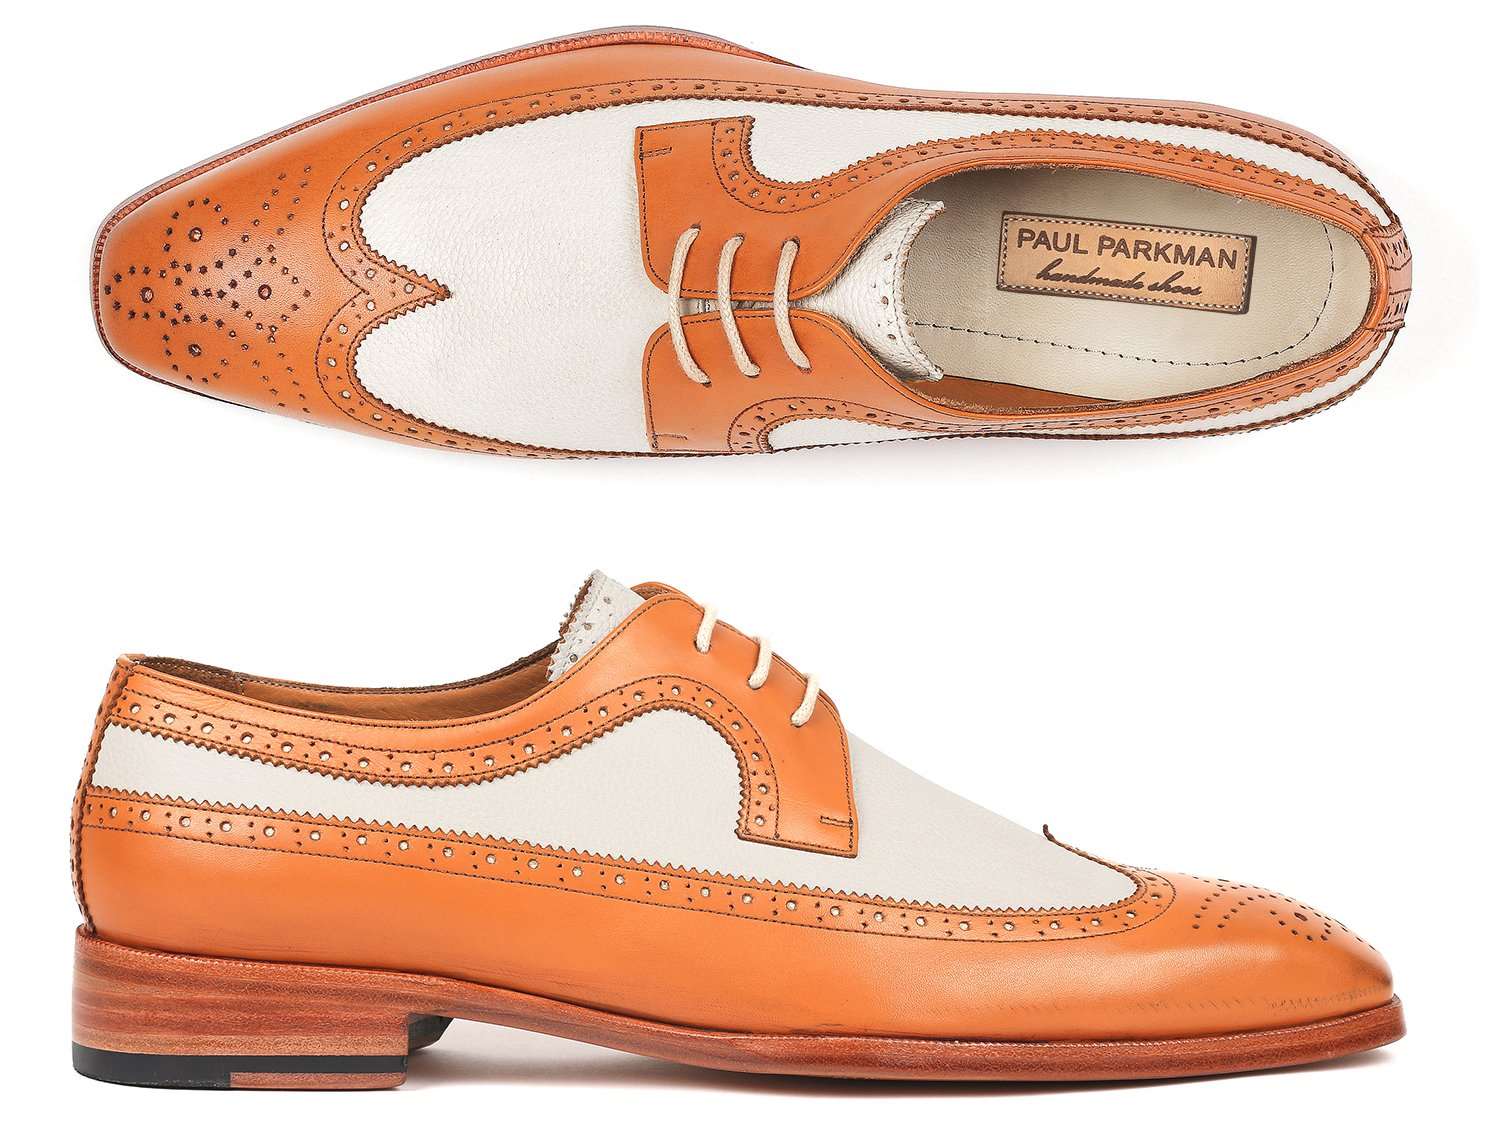 Cognac Derby Shoes - Luxury Leather Footwear 7.5